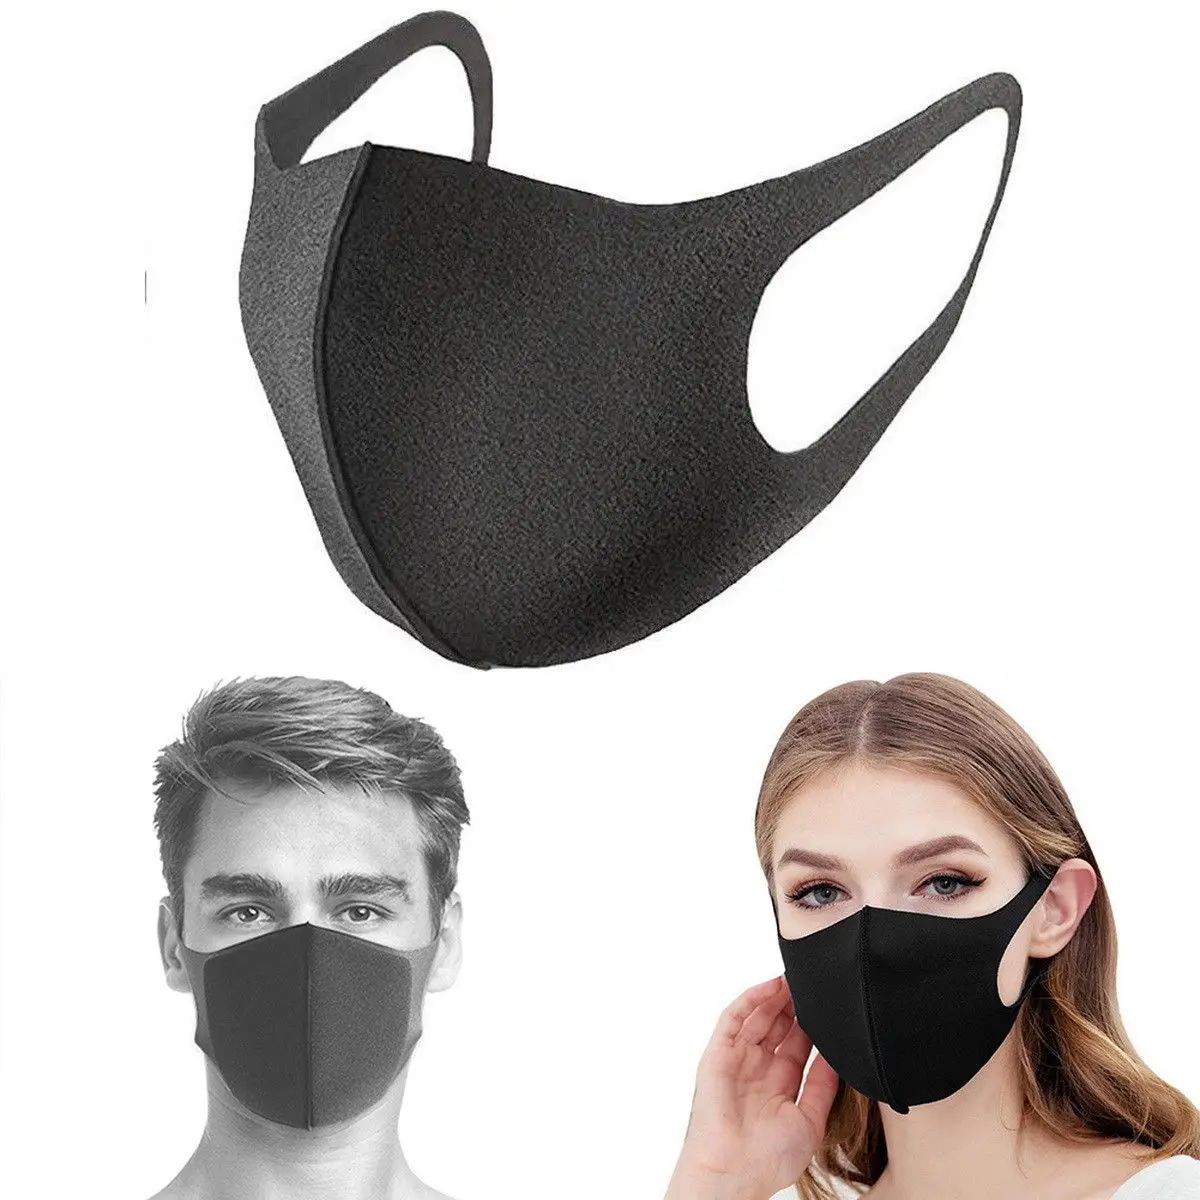 Маска многоразовая против загрязнений унисекс маска для взрослых дышащая маска для лица защита от ветра PM2.5 маска Пылезащитная для